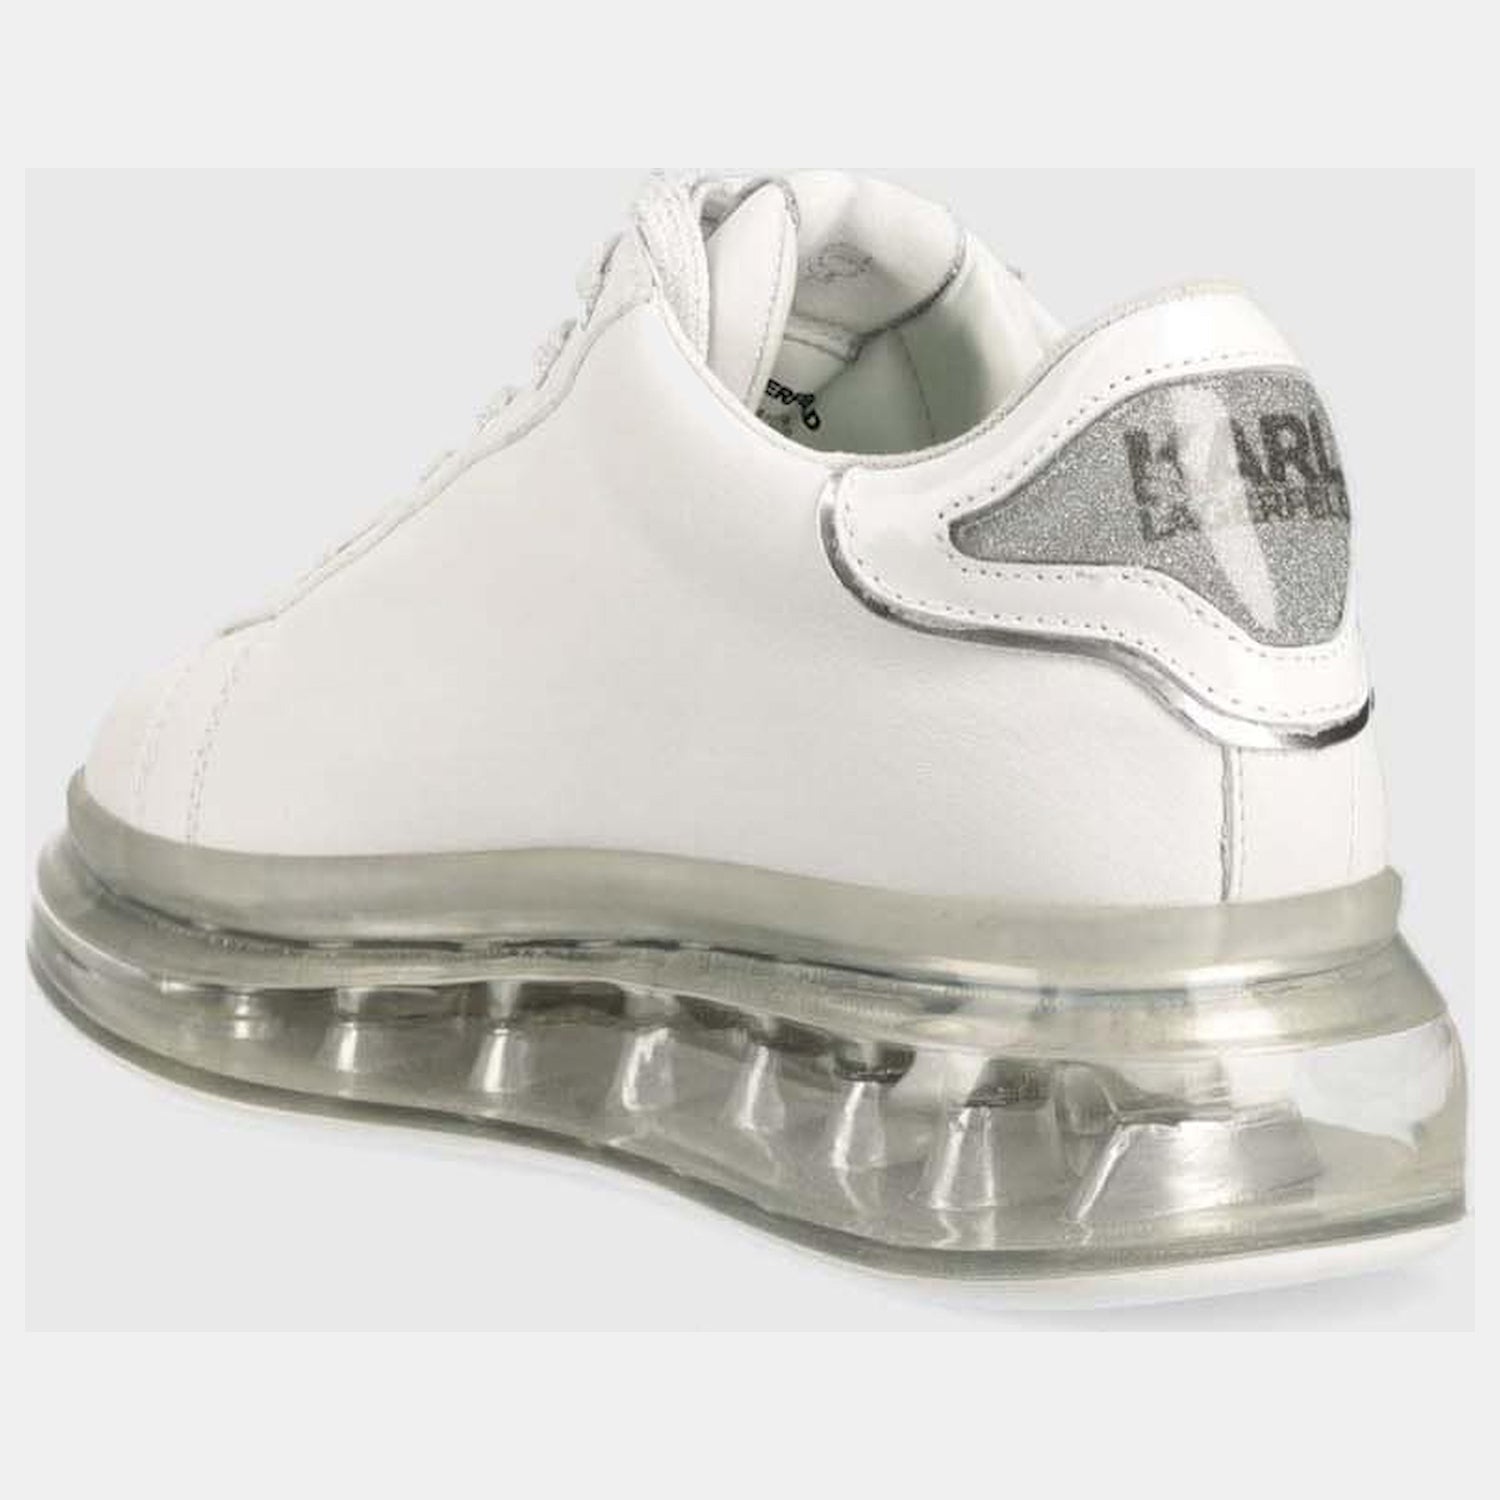 Karl Lagerfeld Sapatilhas Sneakers Shoes Kl62610f Whi Silver Branco Prateado_shot3